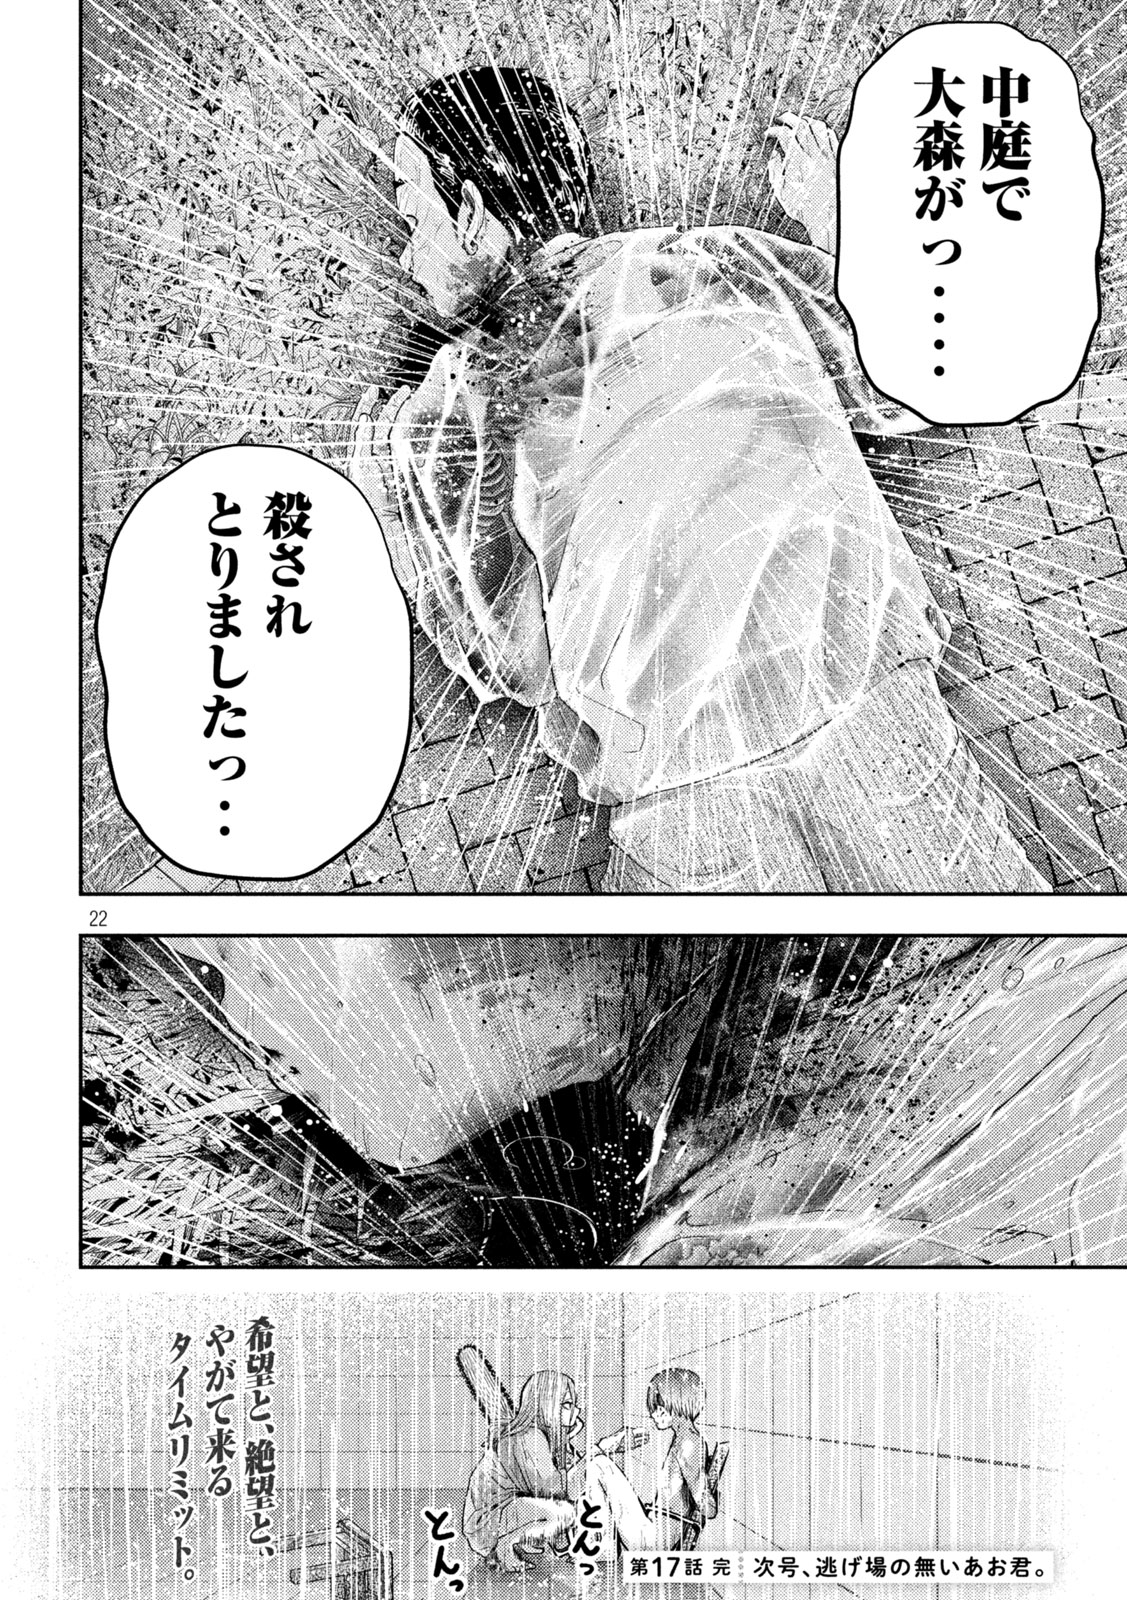 Nezumi no Koi - Chapter 17 - Page 22